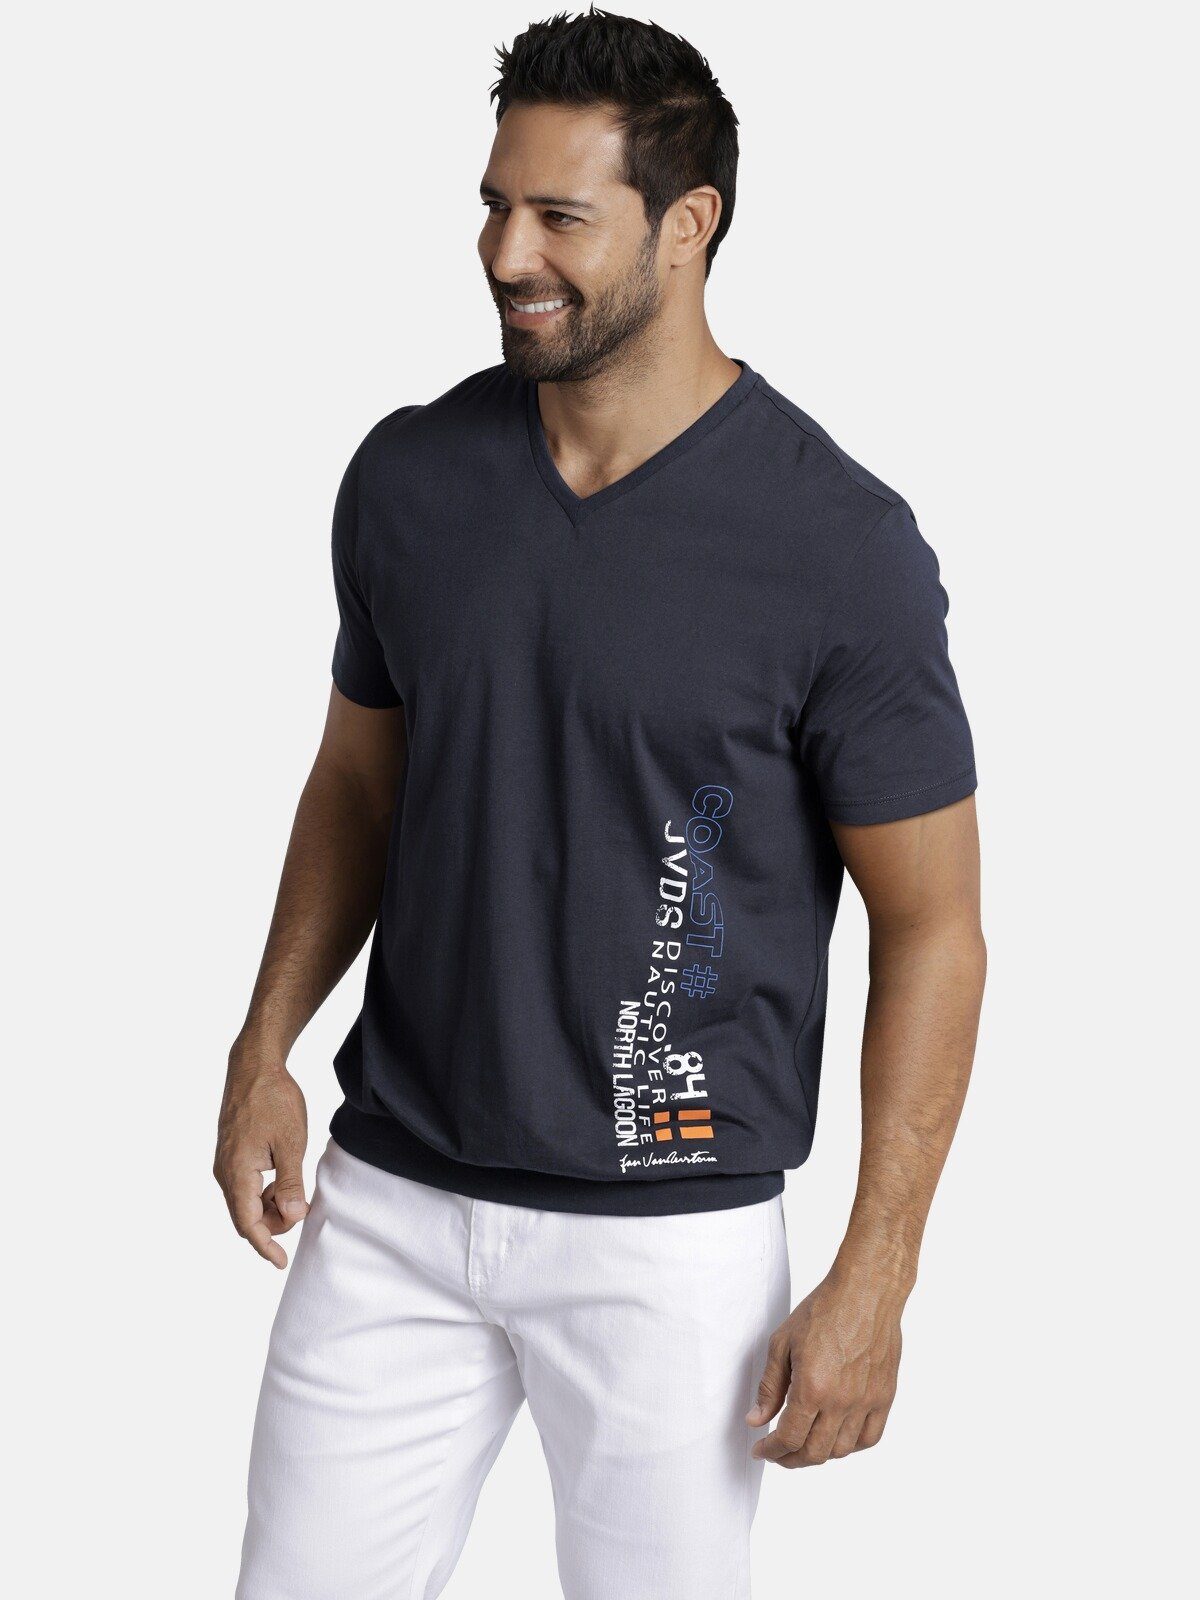 T-Shirt Jan GILBRECHT Comfort Fit Kollektion, Vanderstorm dunkelblau +Fit